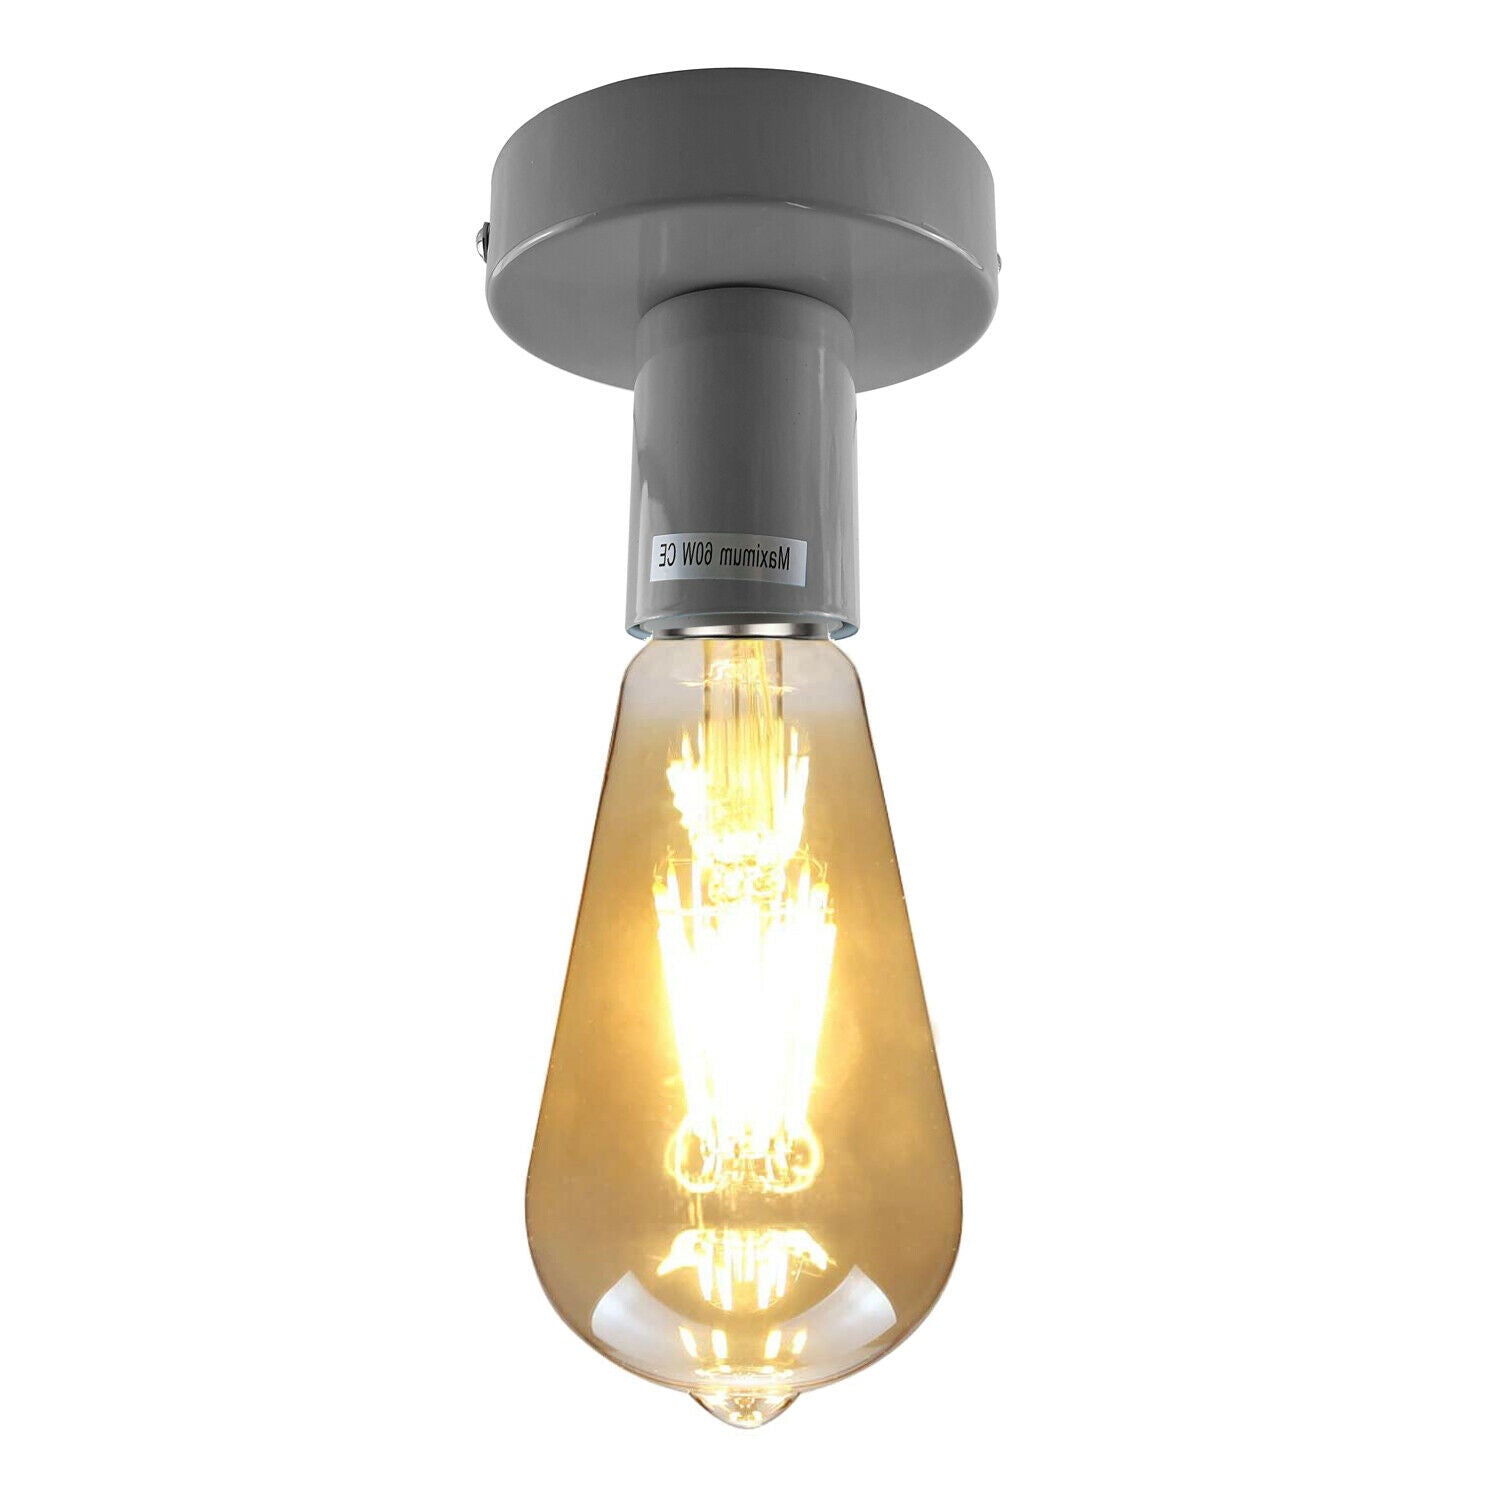 LEDSone industrial vintage Grey Flush Mount Ceiling Light Fitting~1686 - LEDSone UK Ltd